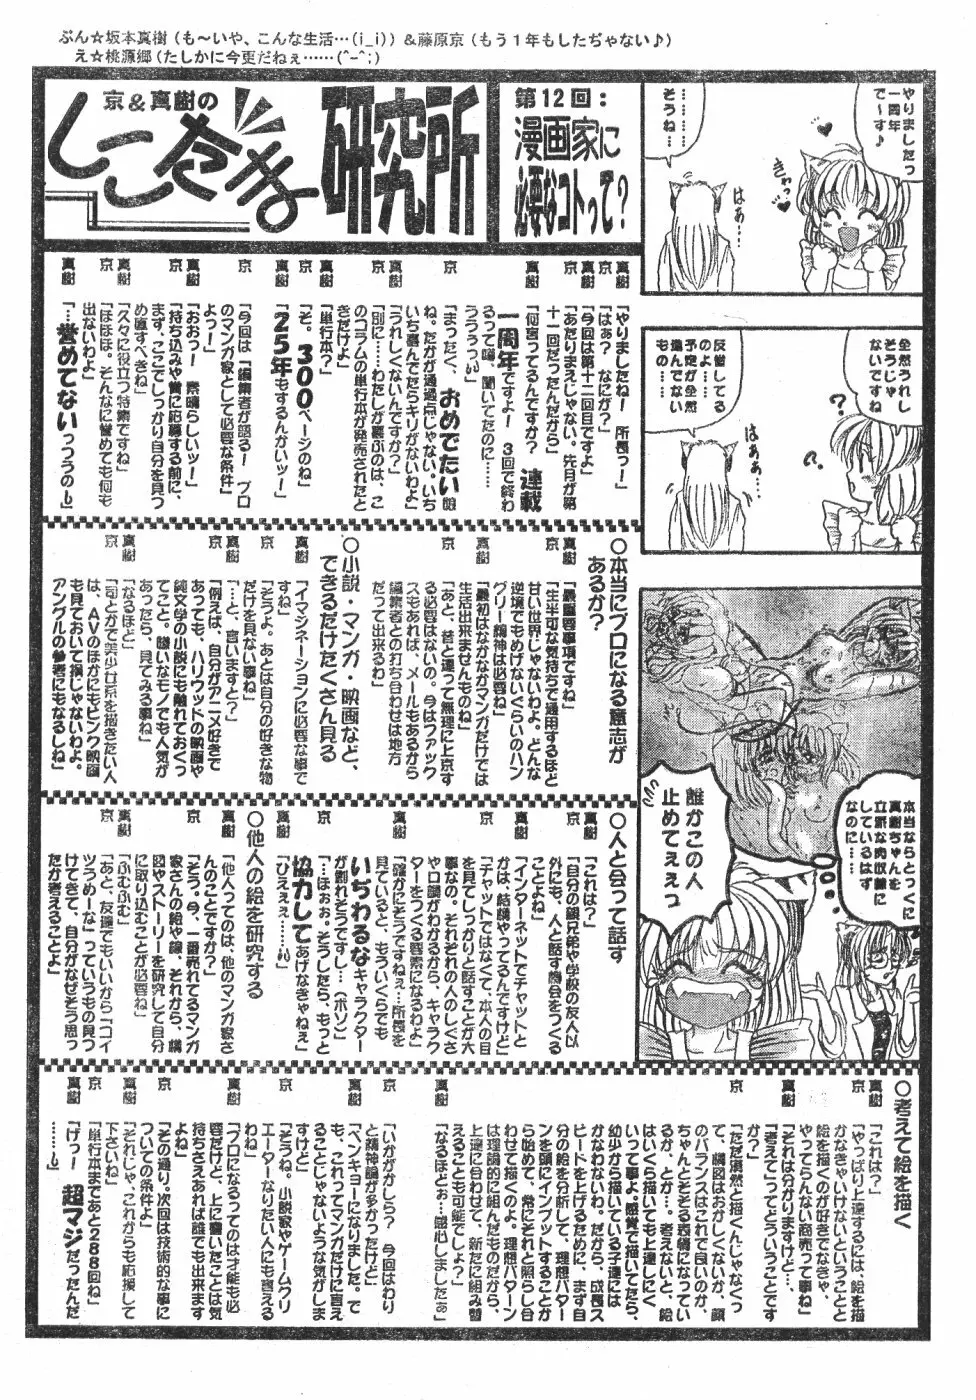 Men’s Dolphin Vol 12 2000-08-01 197ページ